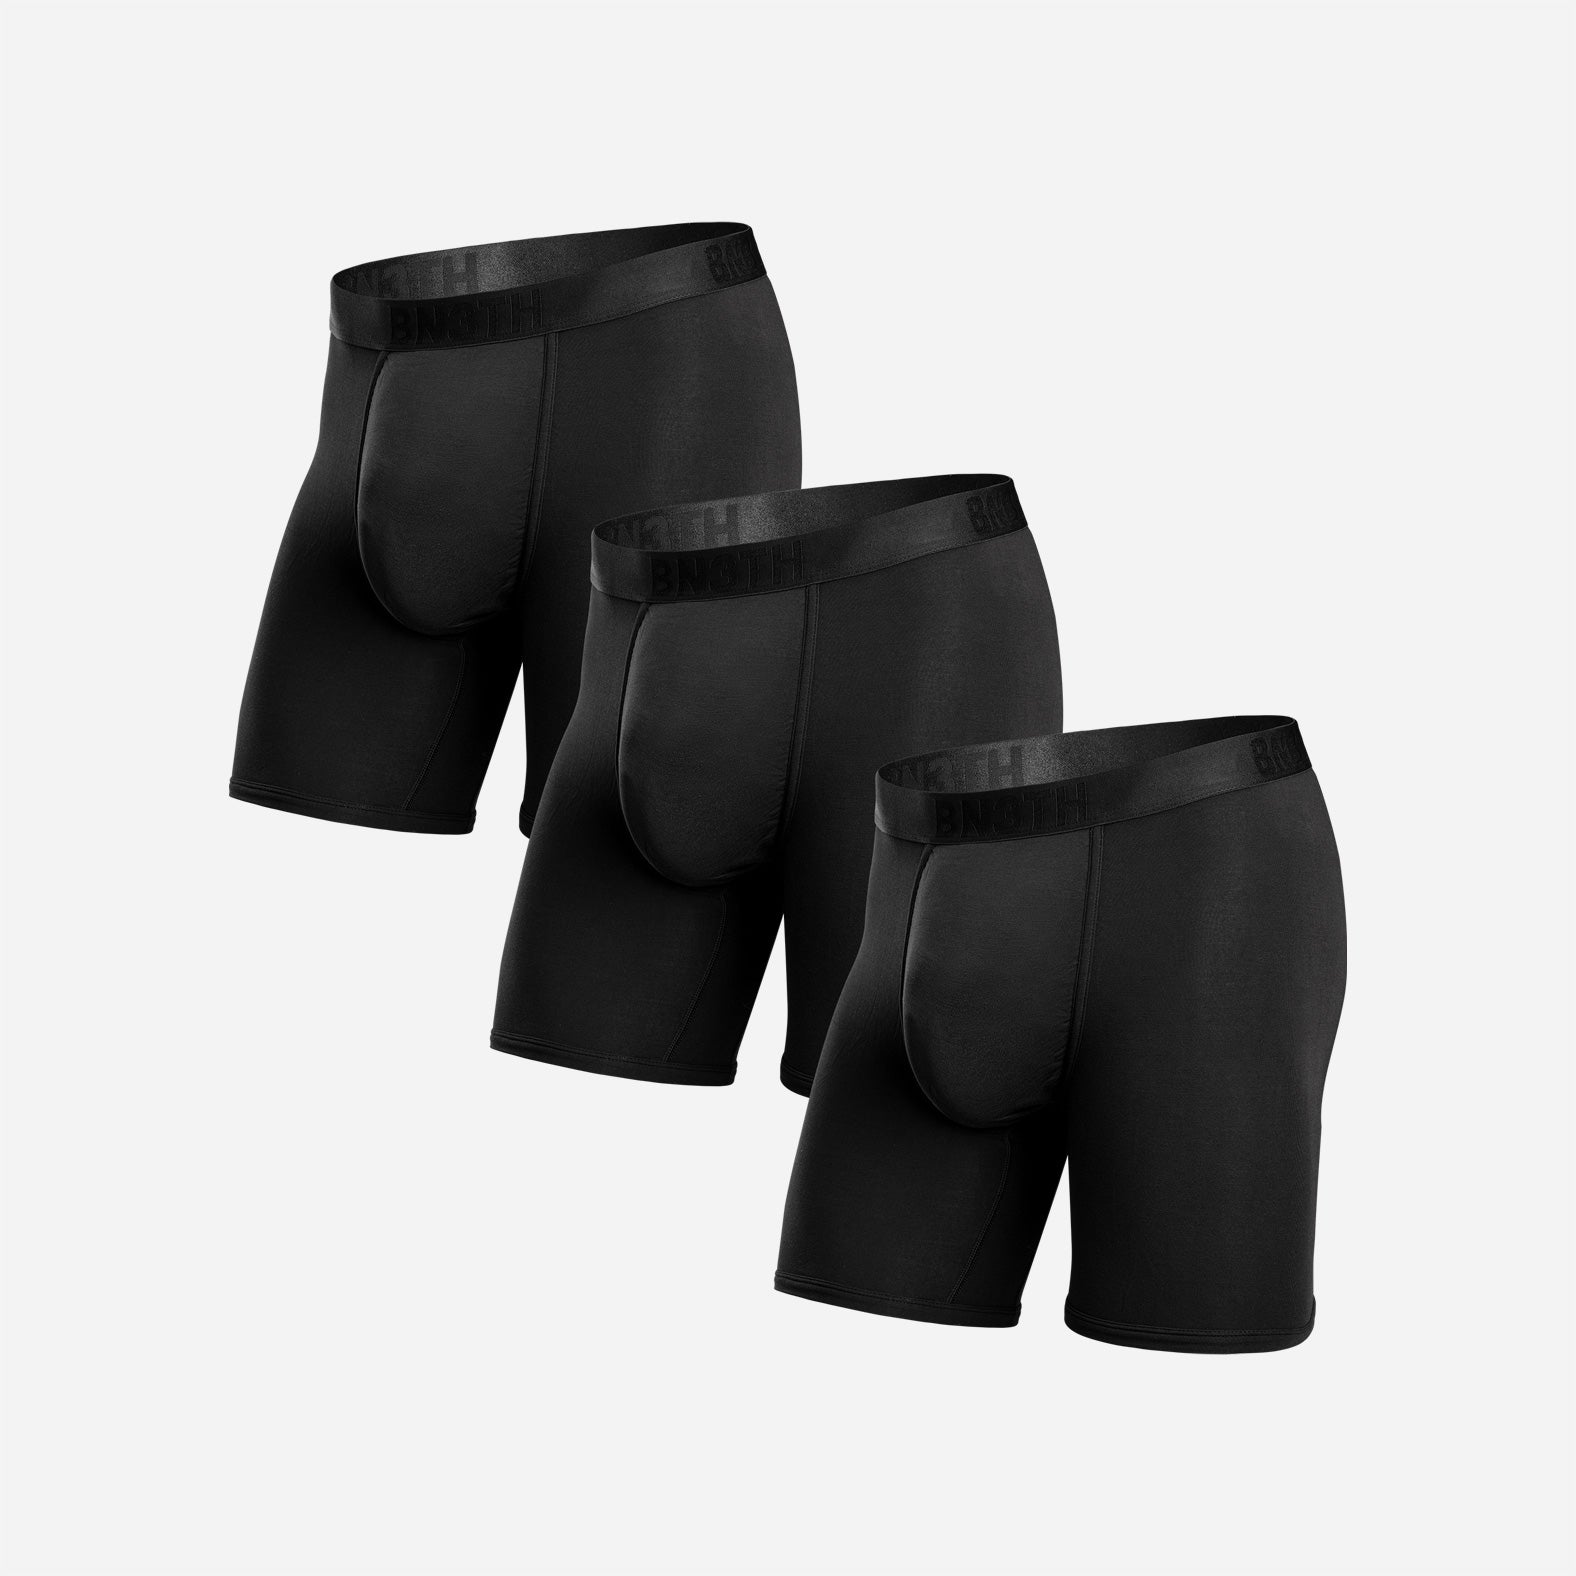 Underwear boxer (3packs)